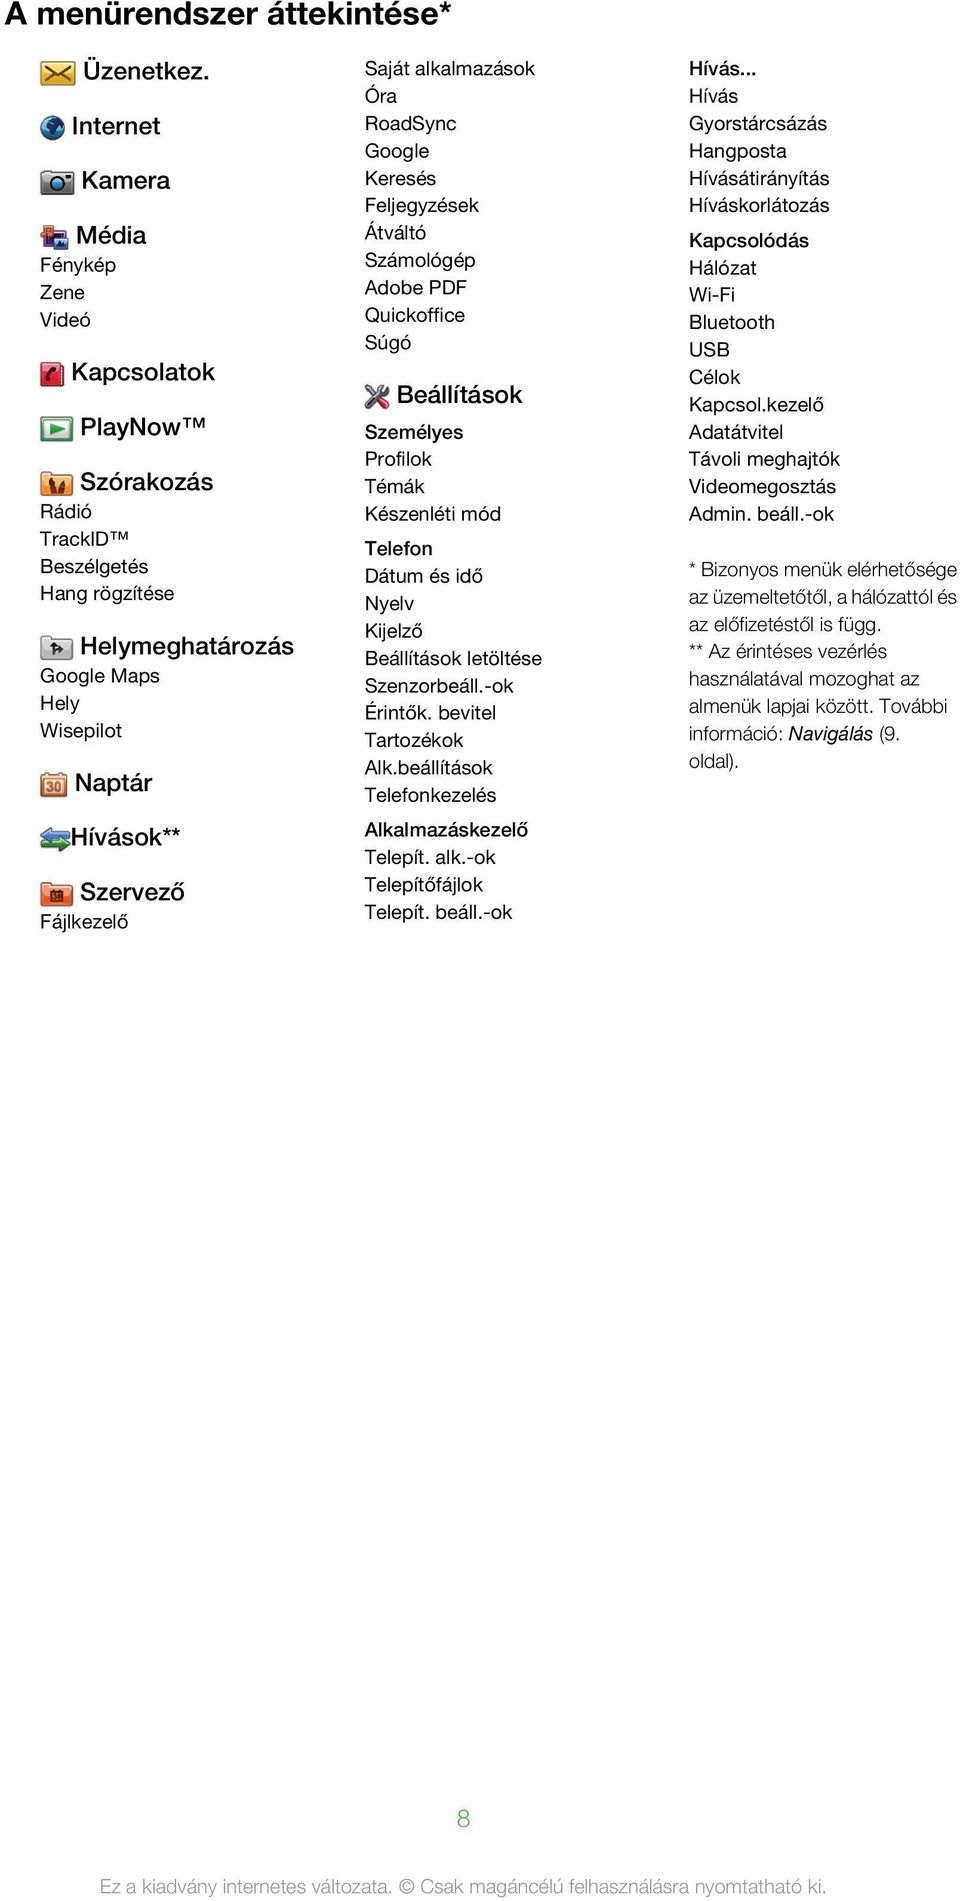 alkalmazások Óra RoadSync Google Keresés Feljegyzések Átváltó Számológép Adobe PDF Quickoffice Súgó Beállítások Személyes Profilok Témák Készenléti mód Telefon Dátum és idő Nyelv Kijelző Beállítások